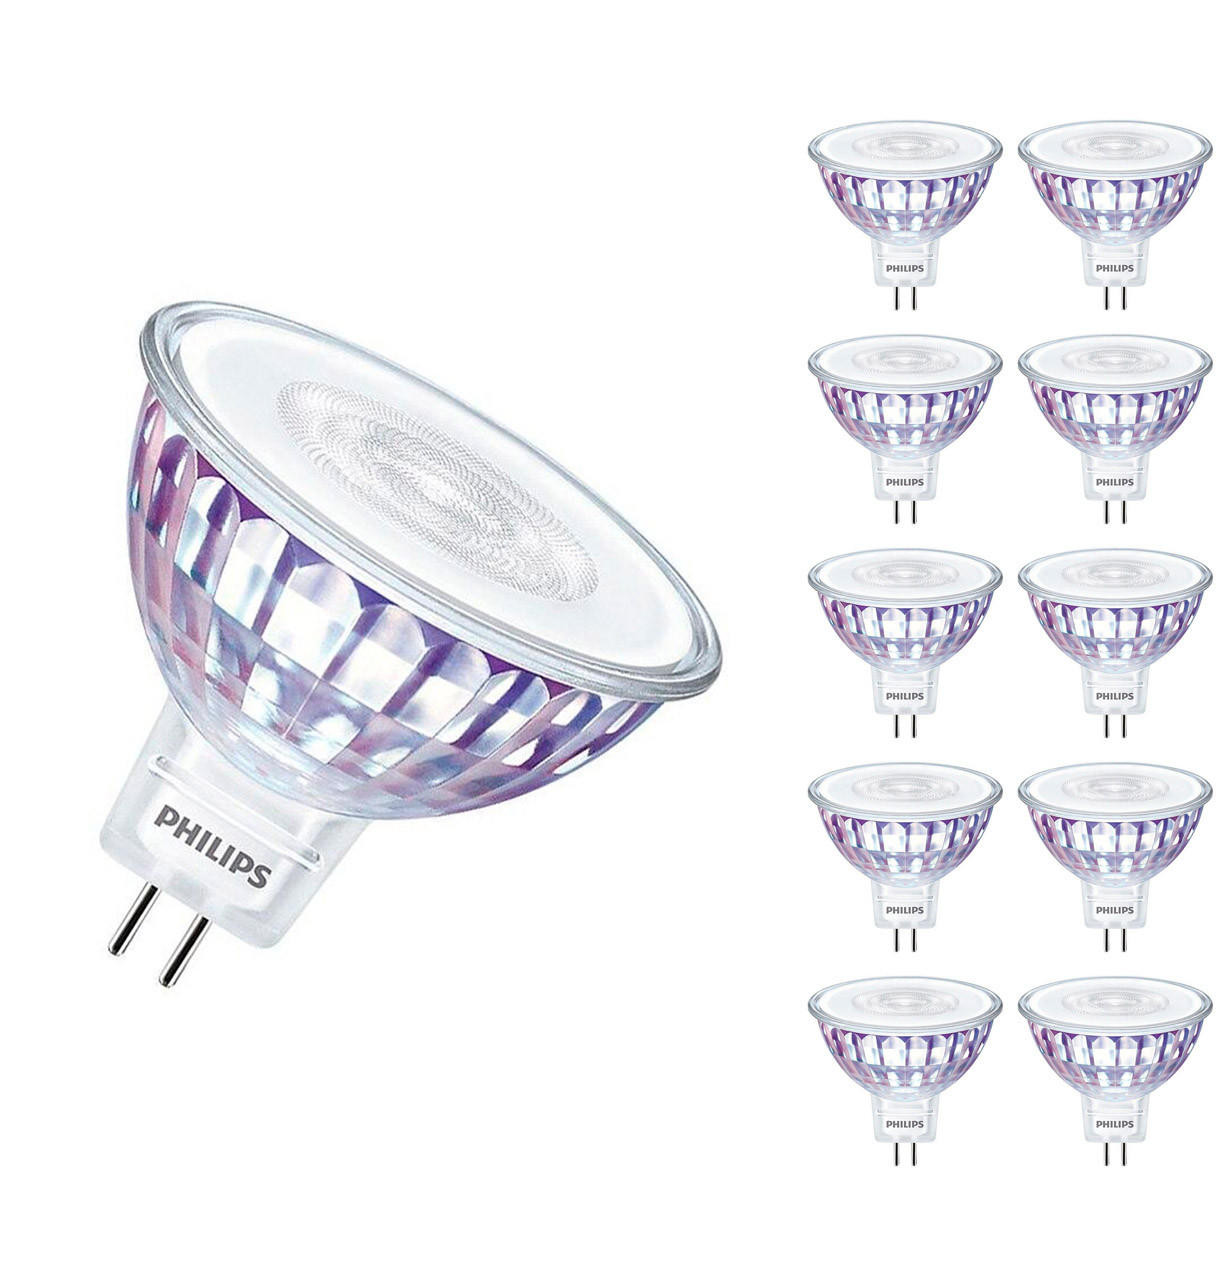 Pilgrim døråbning Manifest Philips LED MR16 Bulbs 5.8W GU5.3 12V Dimmable Master Value LEDspot (10  Pack) Warm White 36° | Lightbulbs Direct